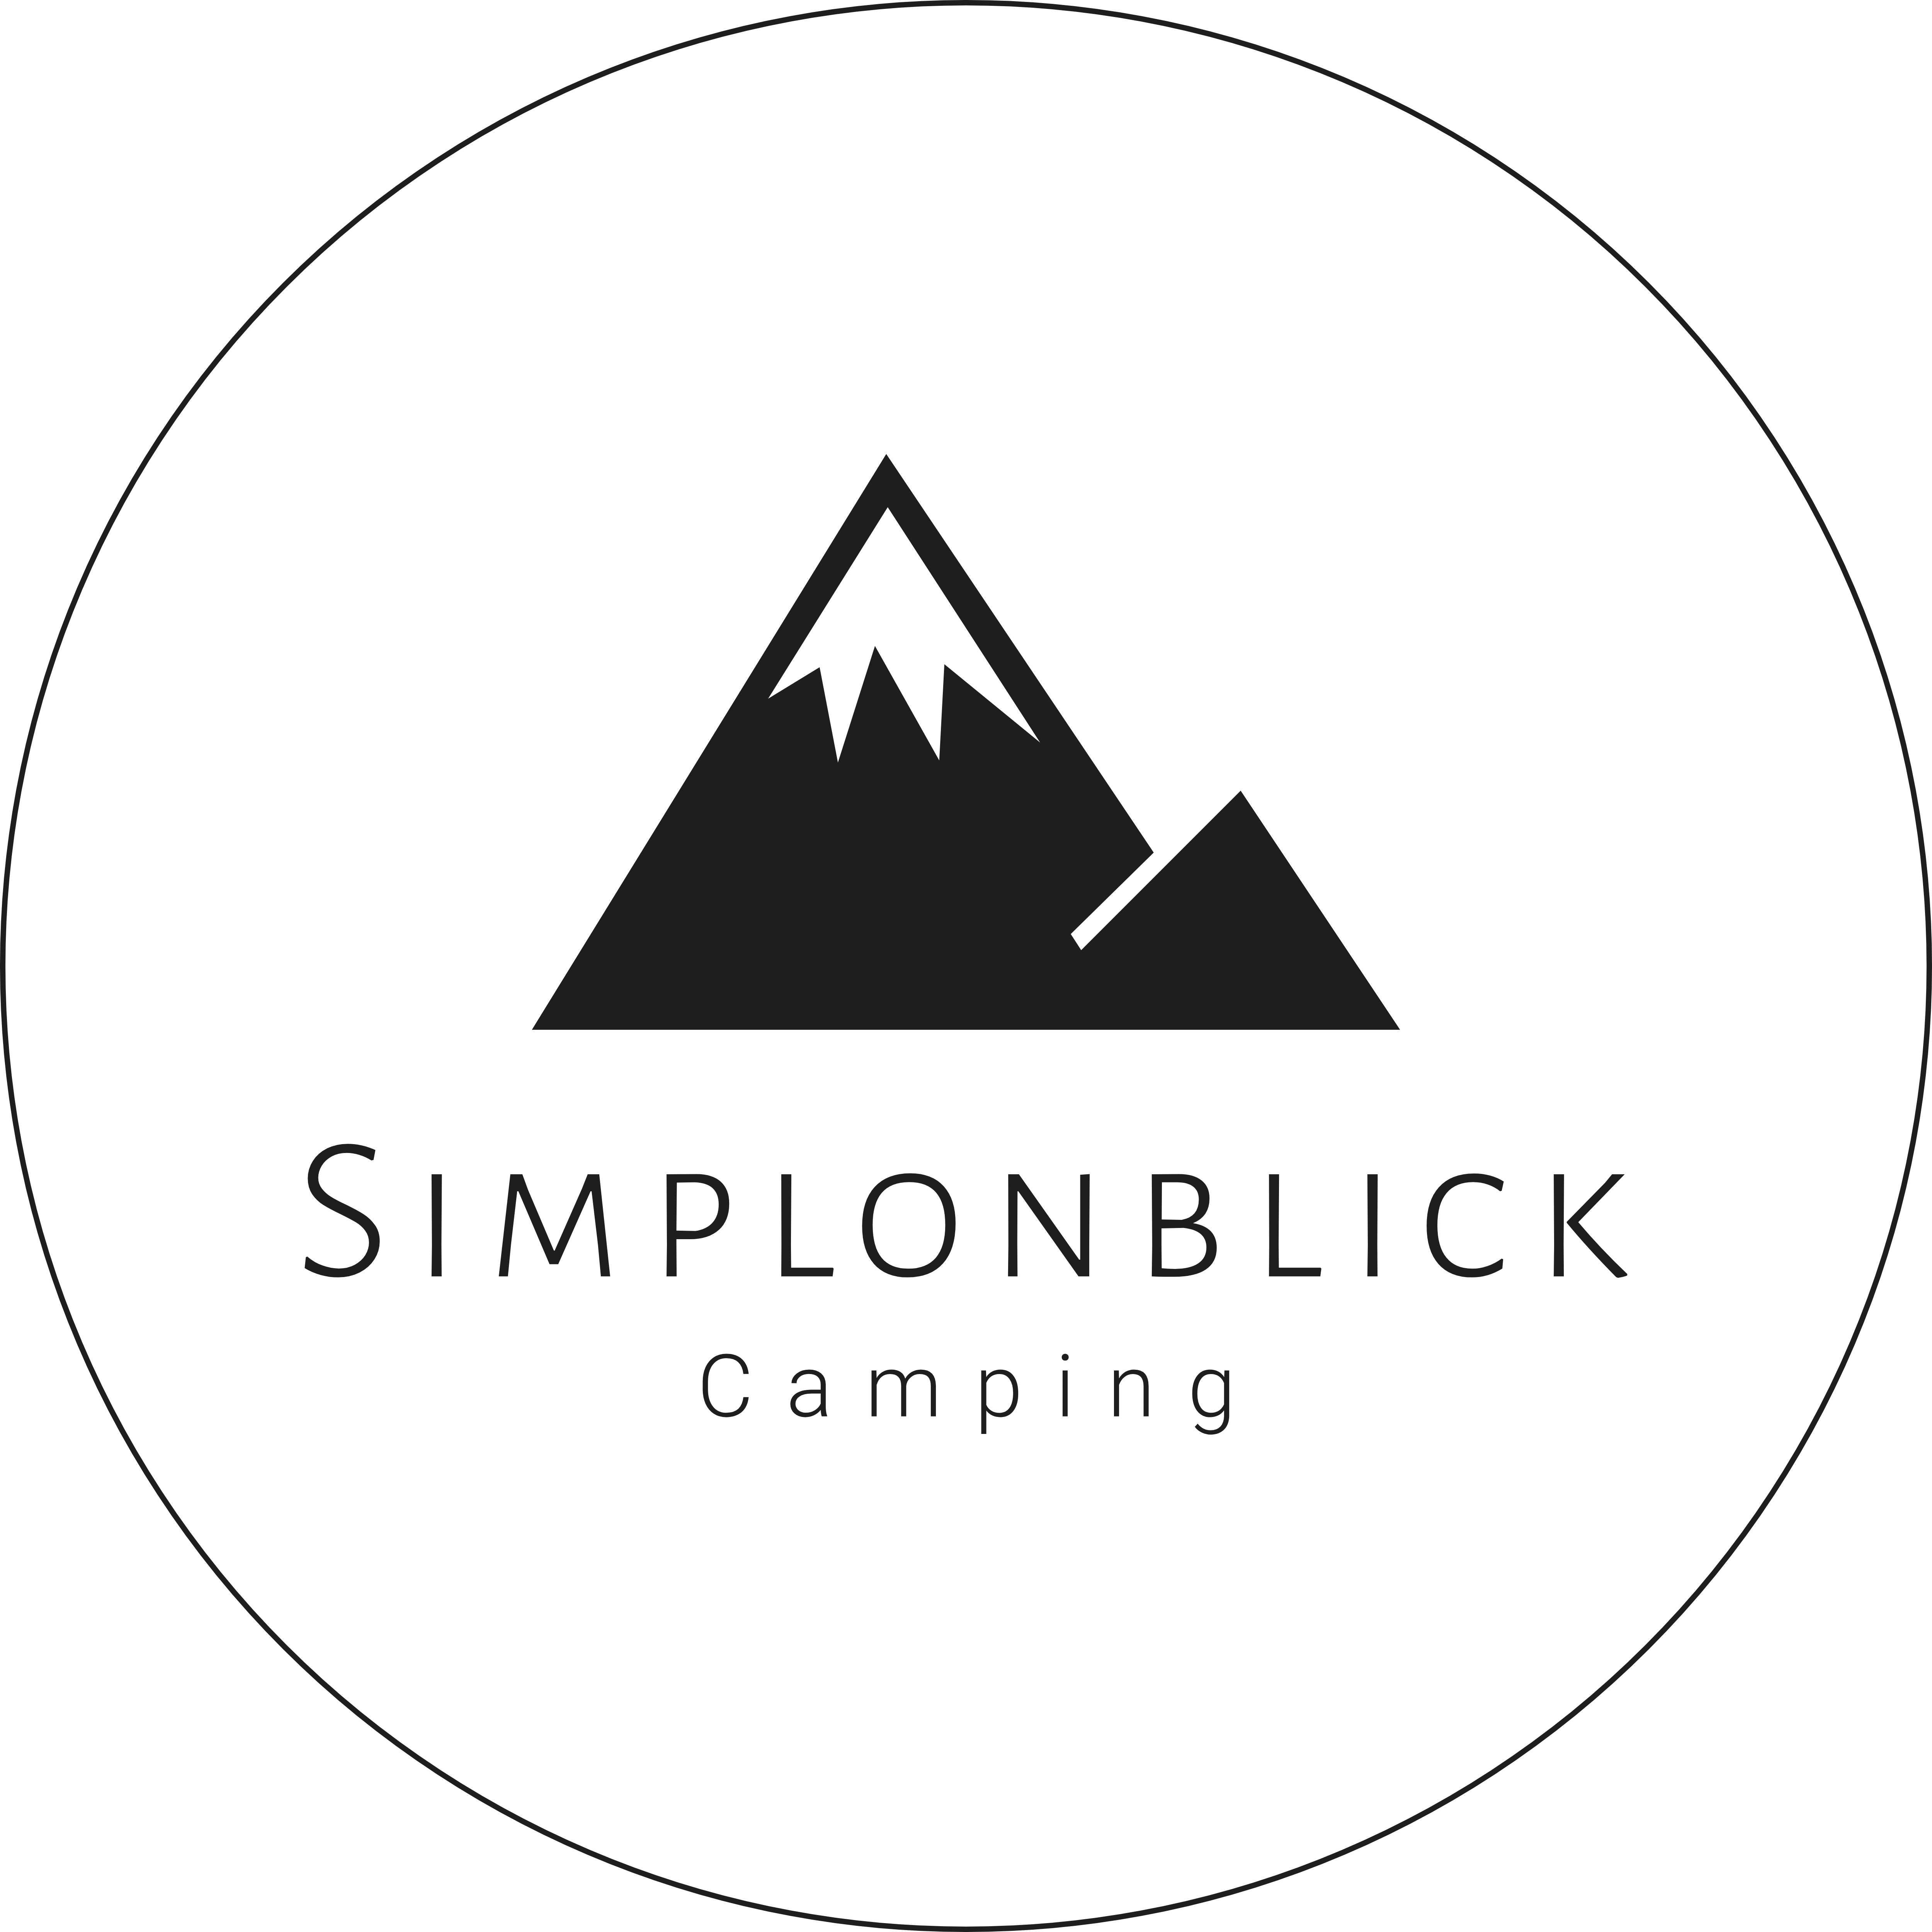 Camping Simplonblick